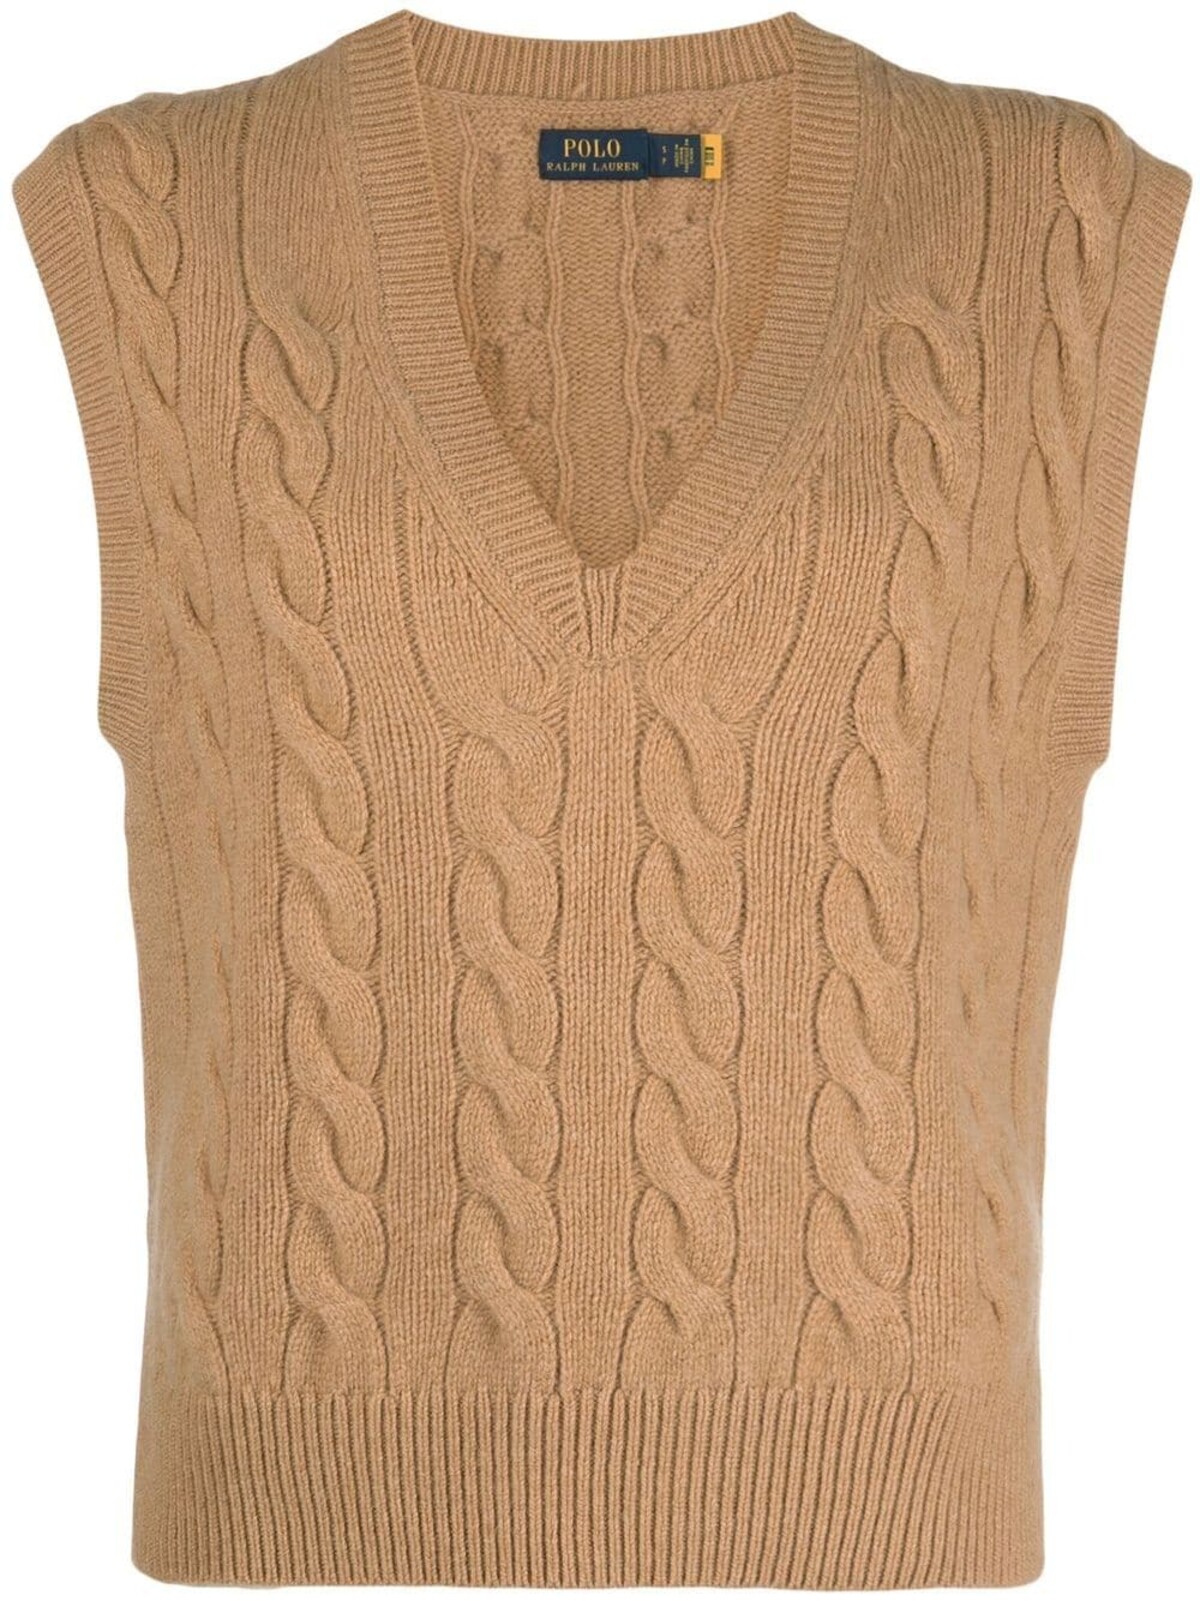 Pletená oversize vesta Polo Ralph Lauren je nadčasovým a unikátnym modelom značky. Mať ho môžeš za 246 €.


